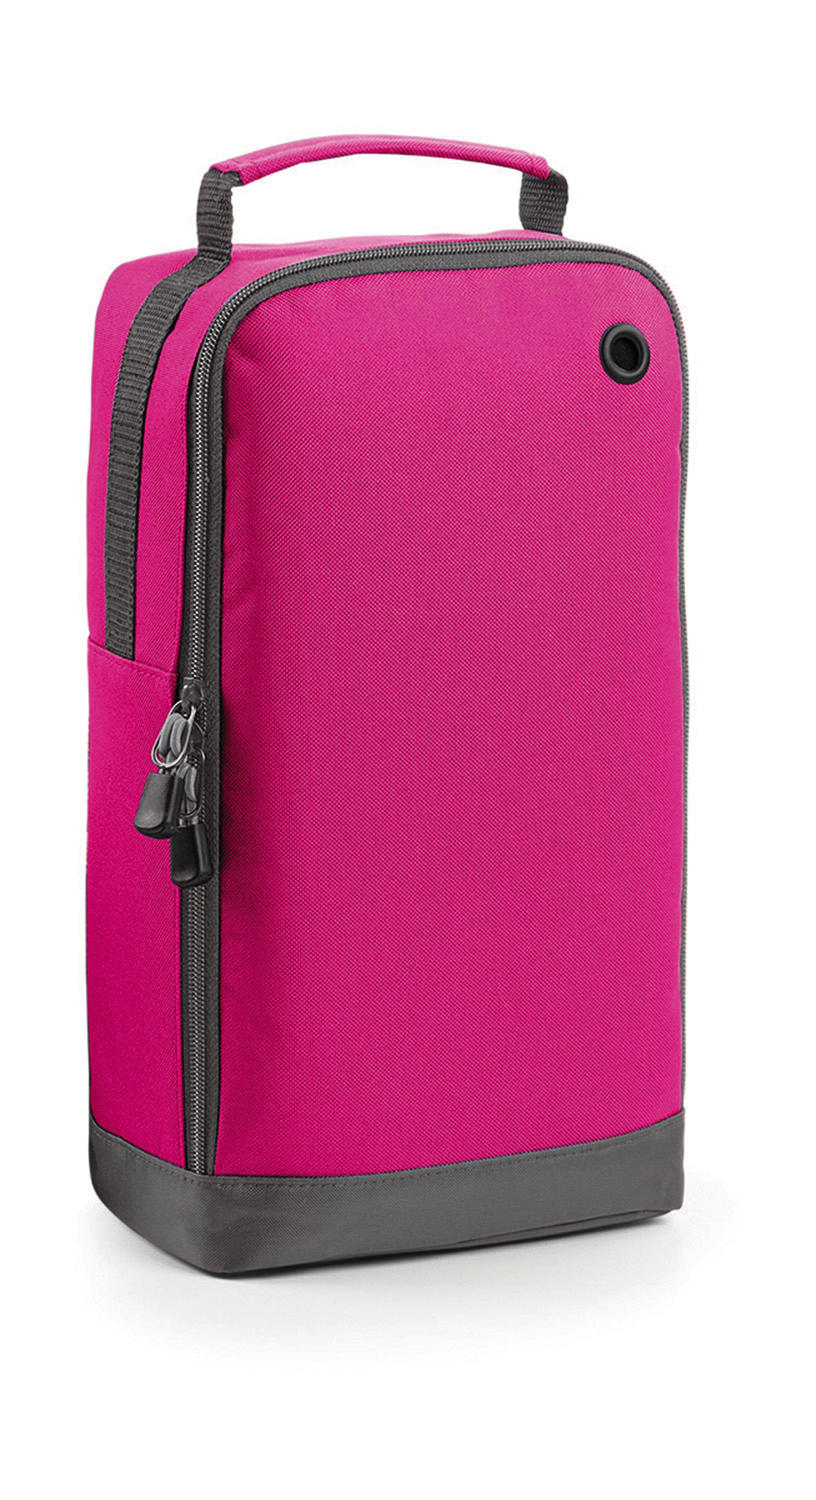  Sports Shoe/Accessory Bag in Farbe Fuchsia